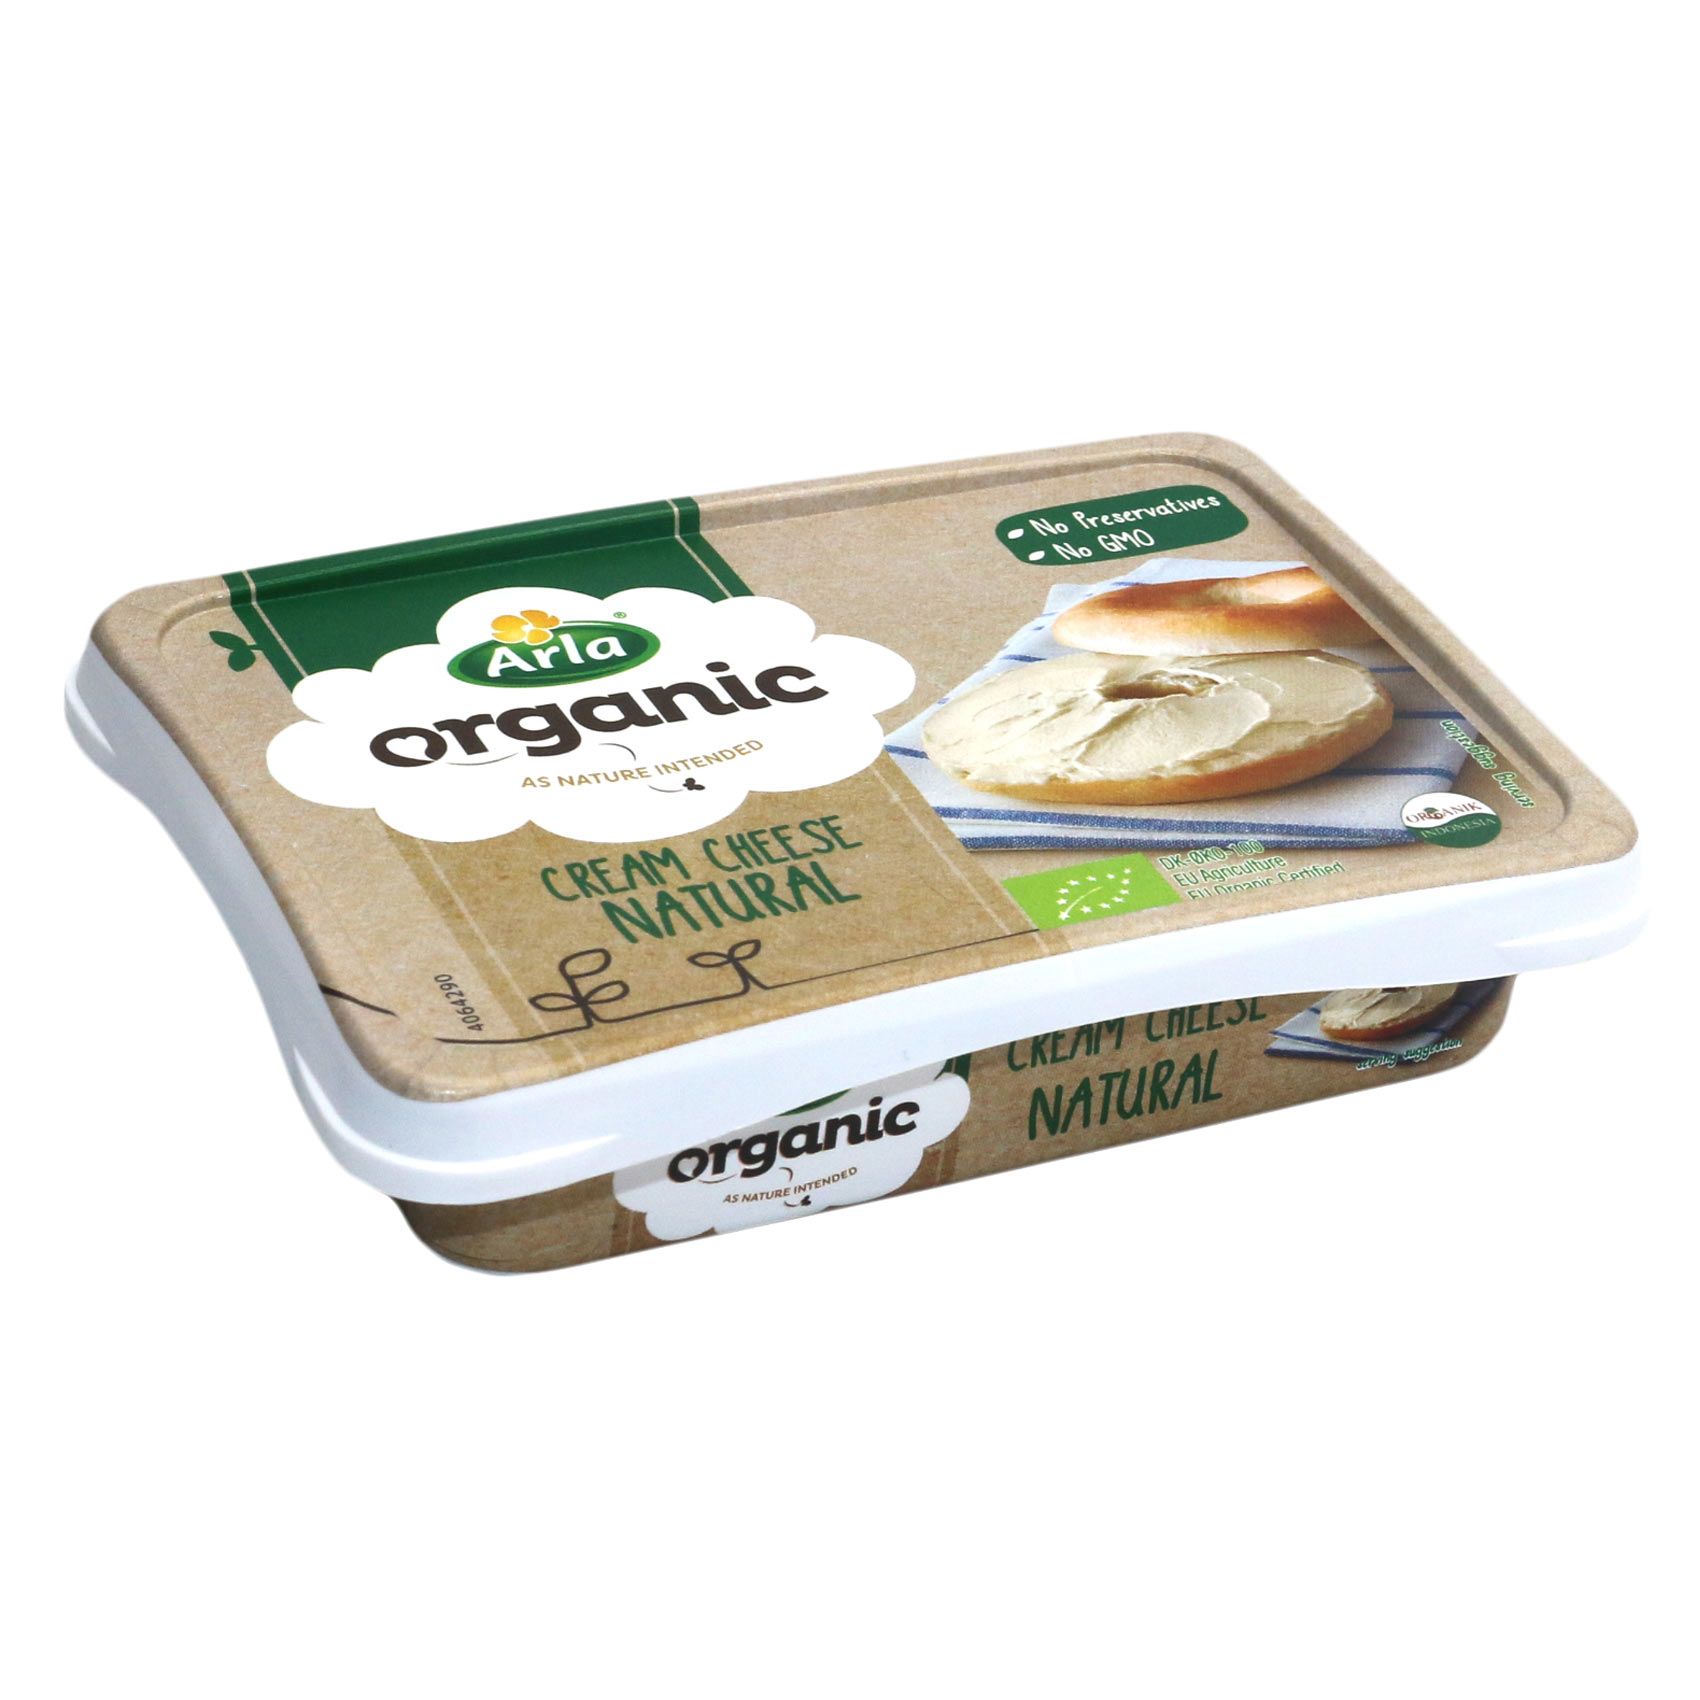 Arla Organicanic Nat Cream Cheese 150G